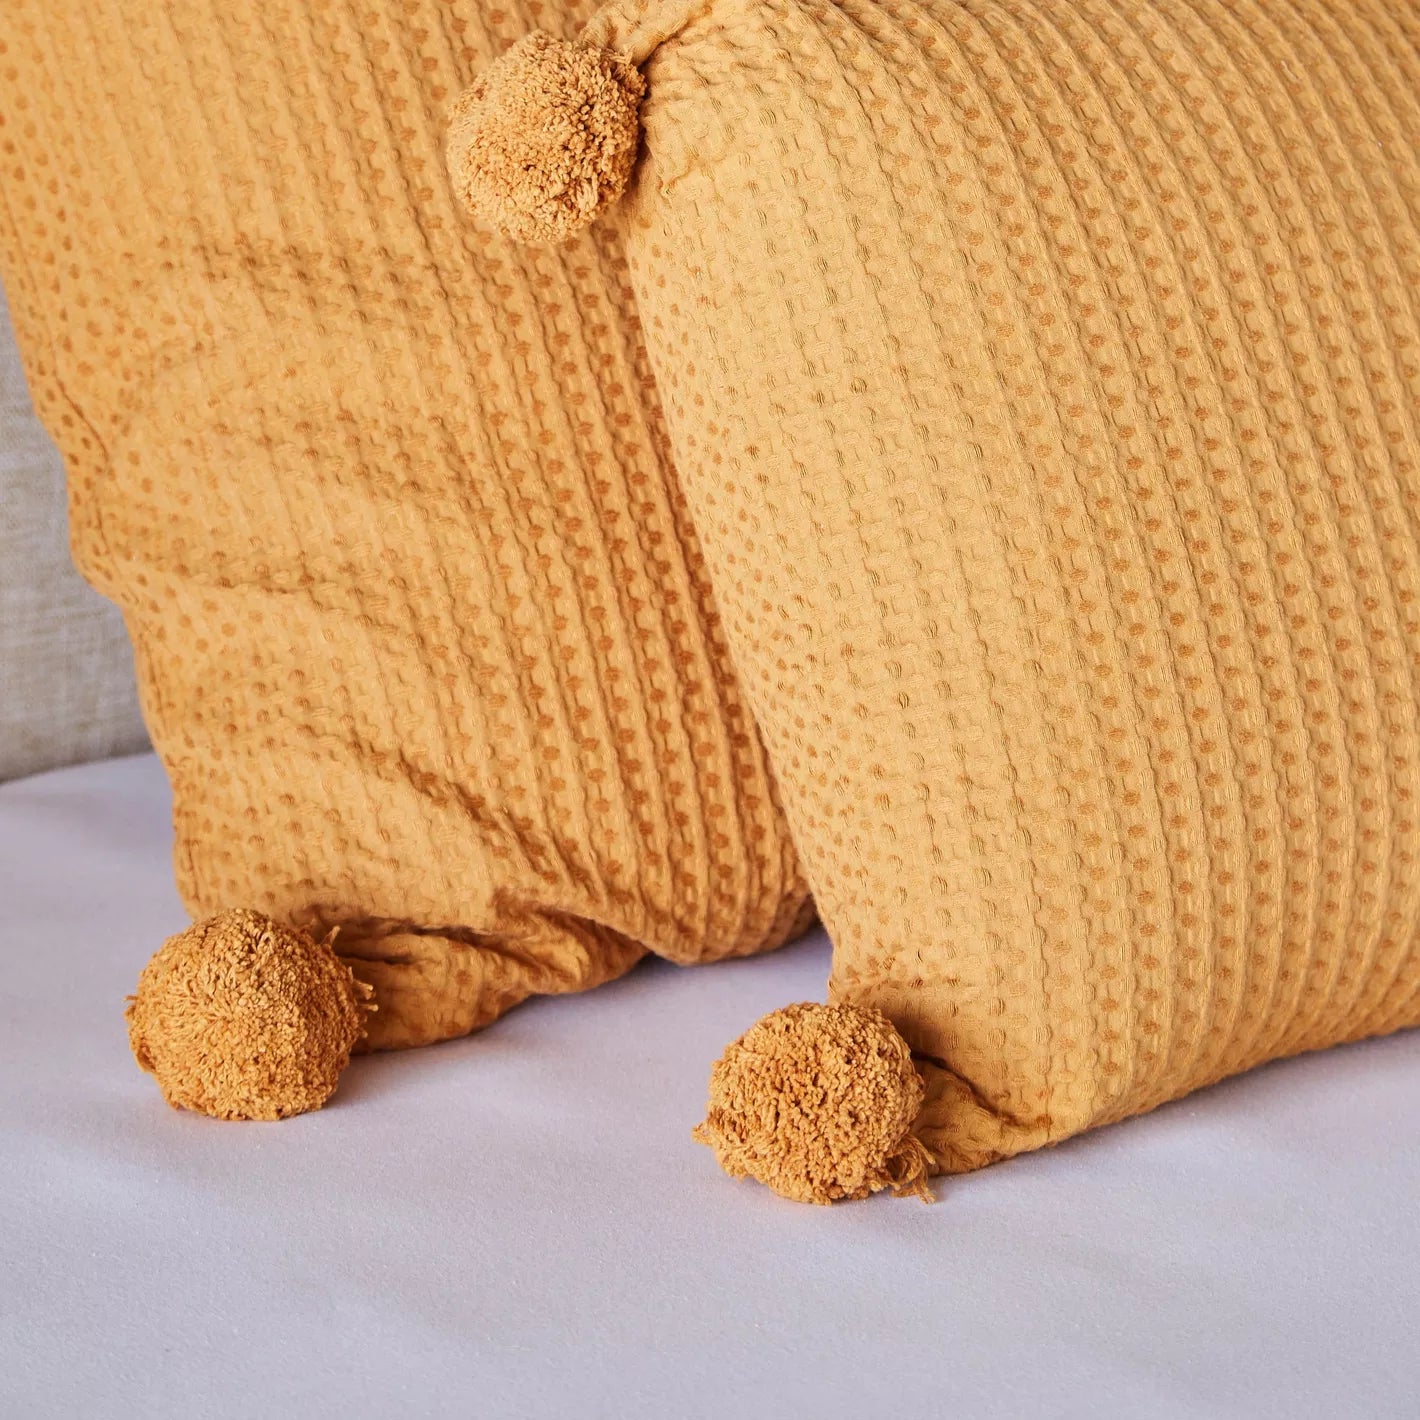 Pom-Pom Cushion Cover - 65x65 cm